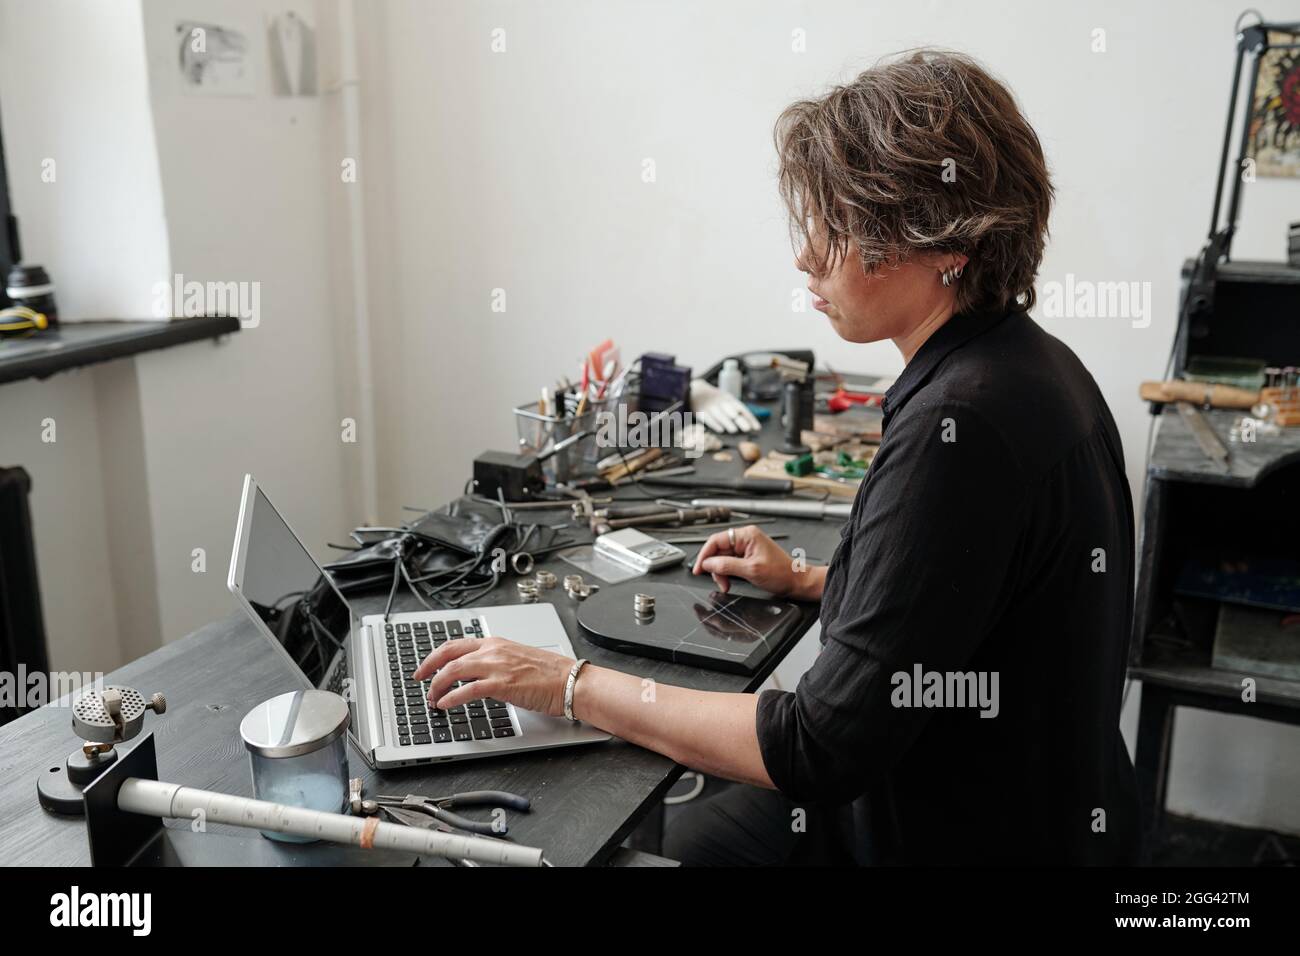 Juwelier mittleren Alters, der mit Werkzeugen am Schreibtisch sitzt und mit einem Laptop Inhalte für den Online-Juwelierladen erstellt Stockfoto